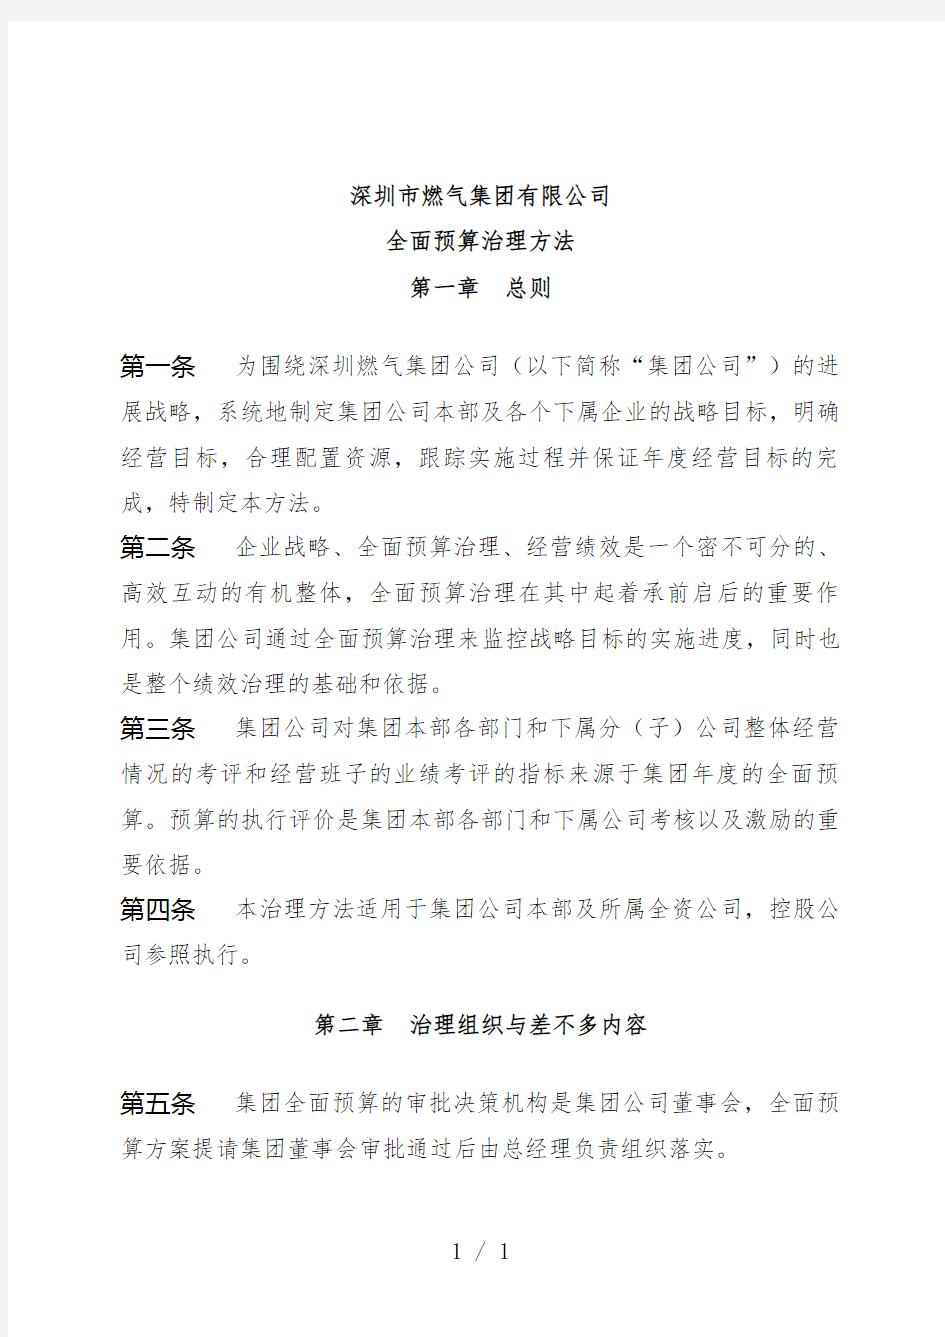 深圳市燃气集团有限公司全面预算管理手册